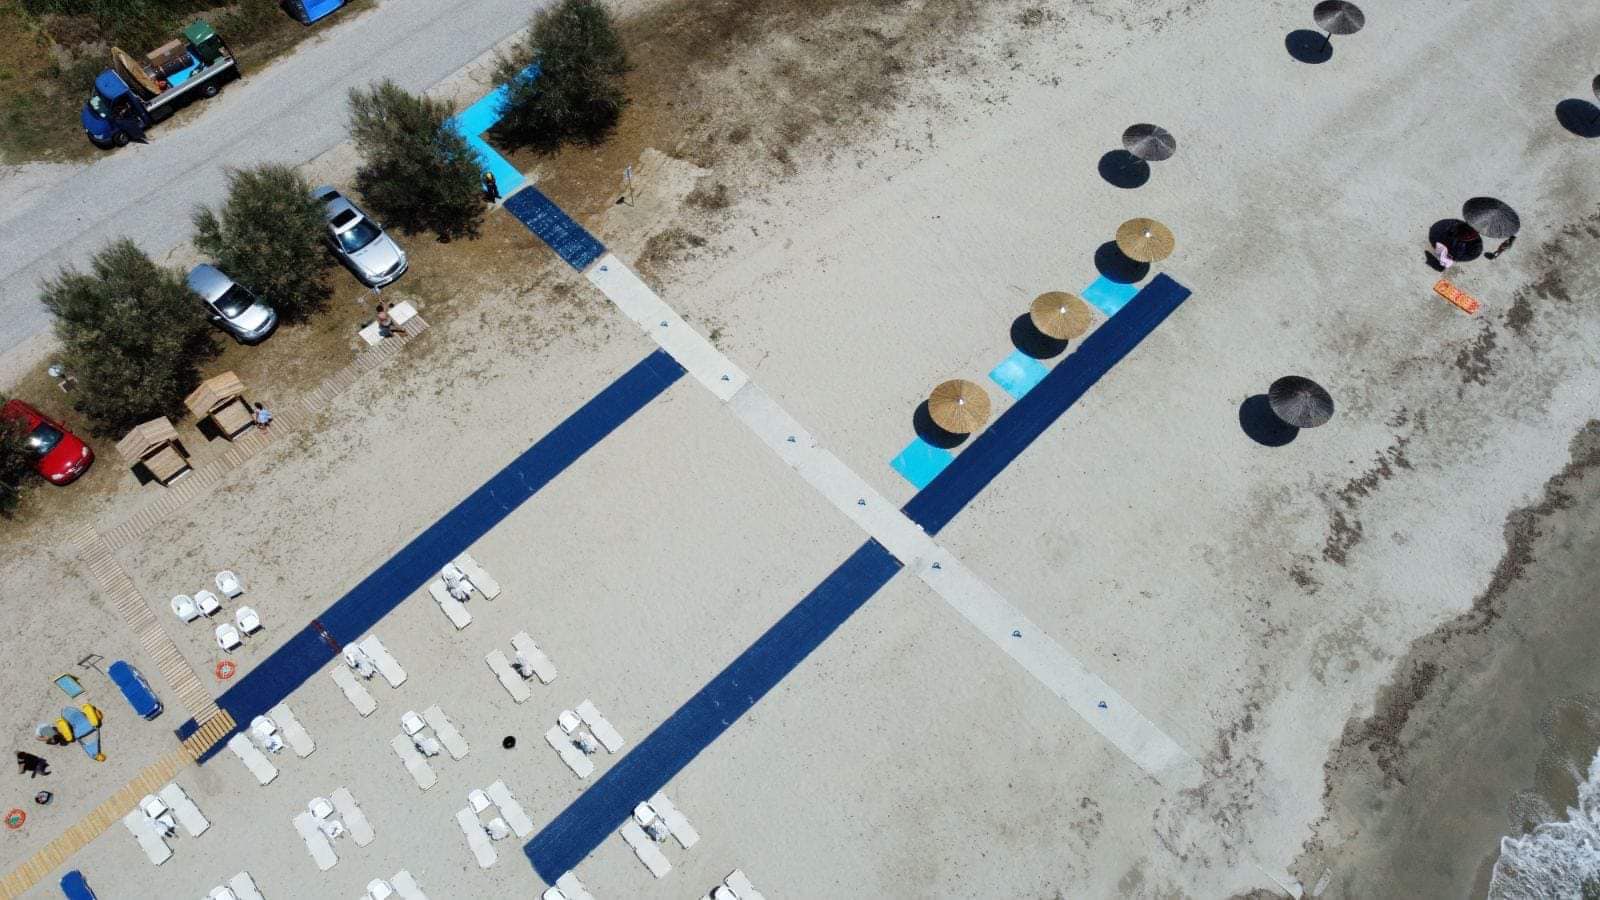 Μηχανισμοί αυτόνομης εισόδου-εξόδου στη θάλασσα για άτομα με αναπηρία στις παραλίες του Δήμου Κομοτηνής